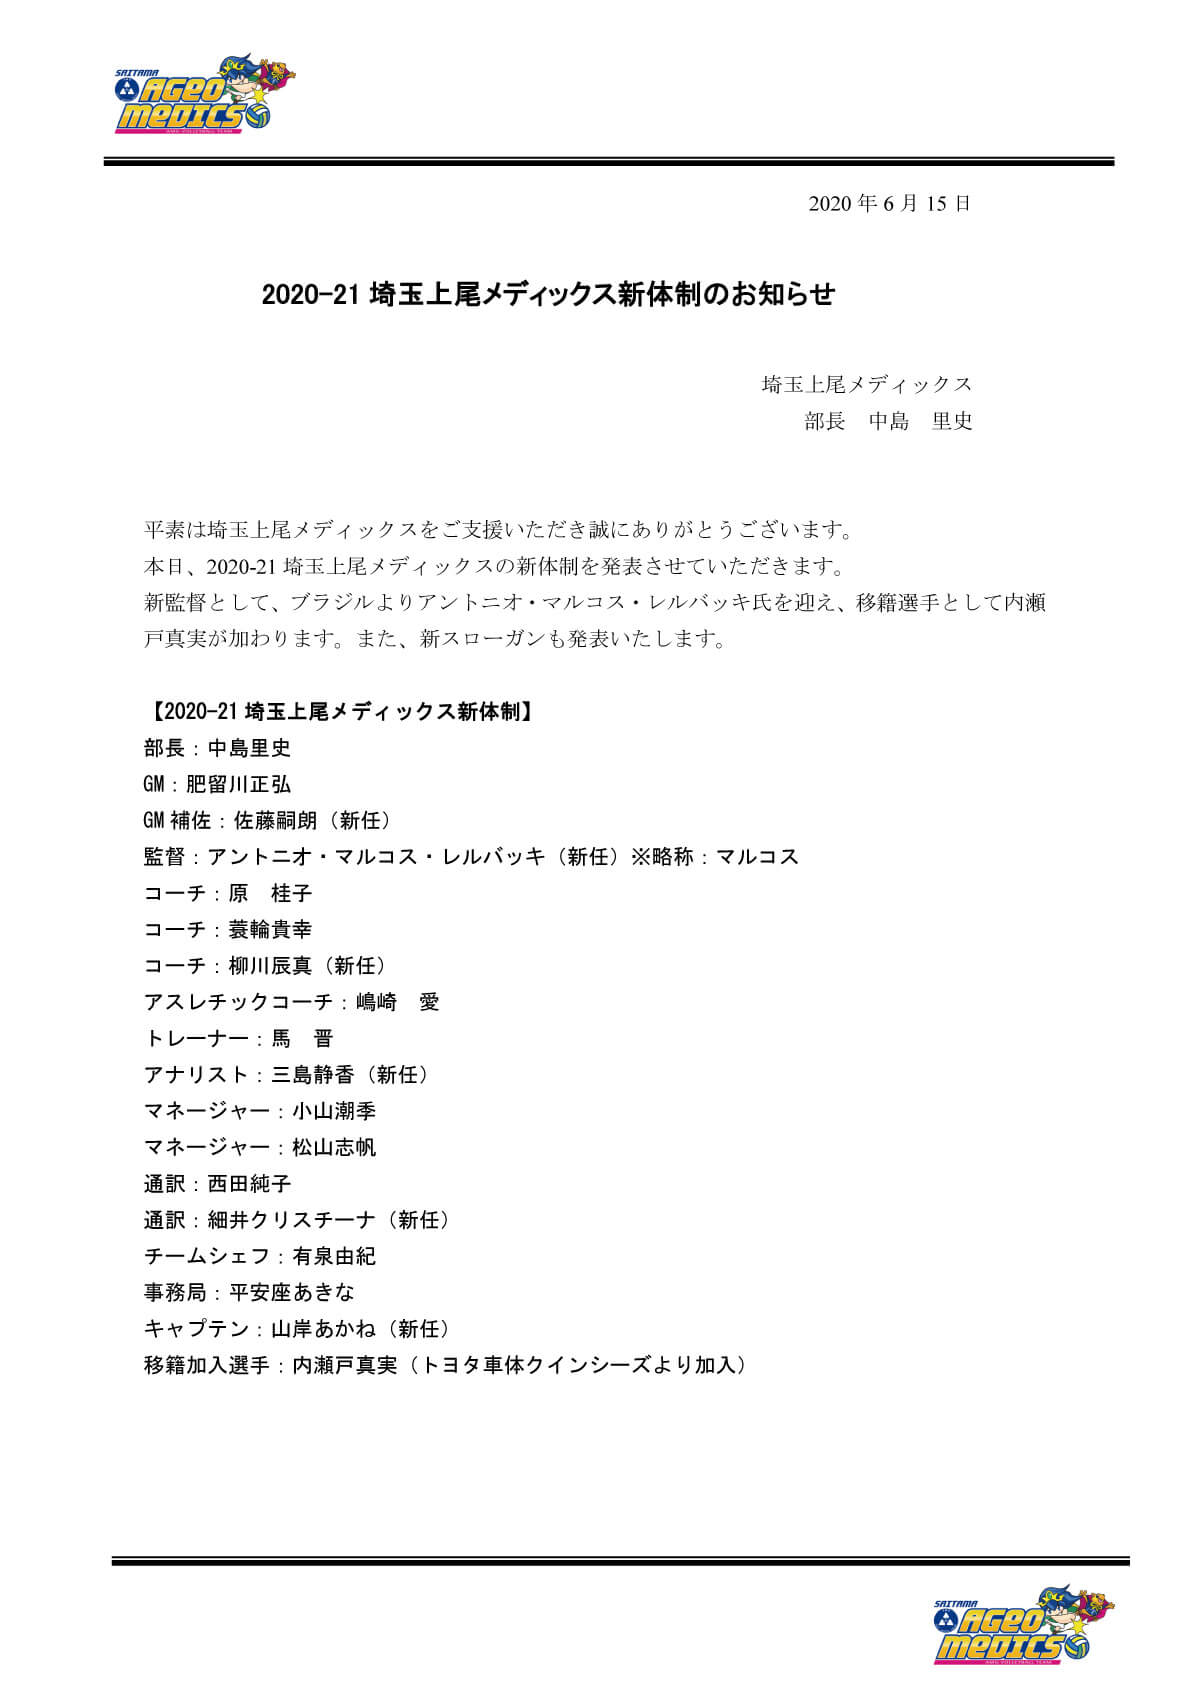 2020-21埼玉上尾メディックス新体制のお知らせ